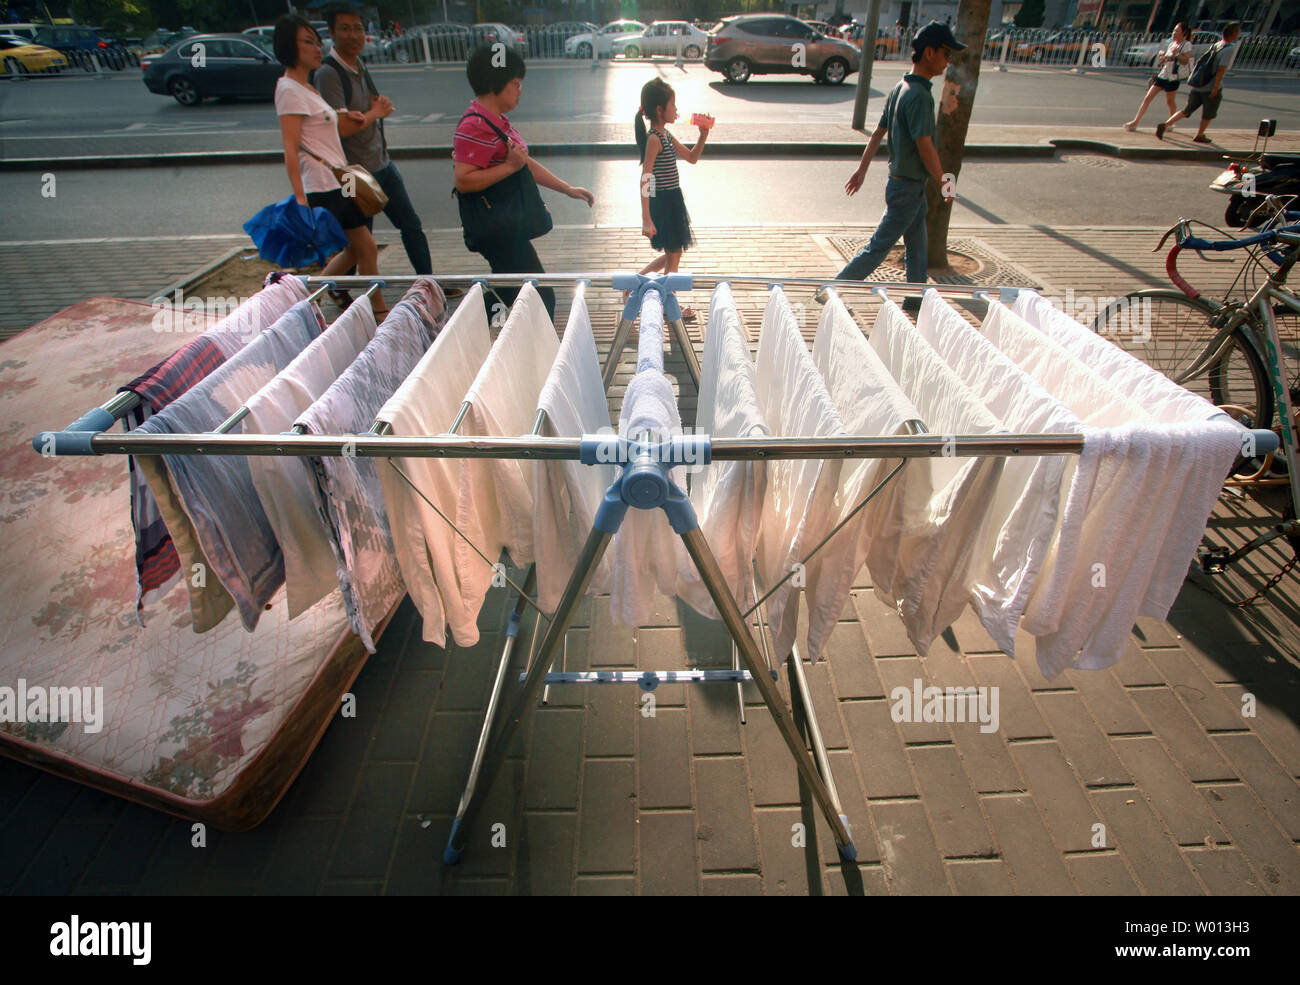 Chinesische vorbei Handtücher hingen heraus auf einem Bürgersteig in der Innenstadt von Peking am 18. August 2013 zu trocknen. Eine neue landesweite Umfrage unterstreicht die breite Kluft zwischen China's haben und Habenichtse, und schlägt vor, dass die Wirtschaft die aktuelle Verlangsamung mit breiten Arbeitslosigkeit bereits hohe eingegeben. UPI/Stephen Rasierer Stockfoto